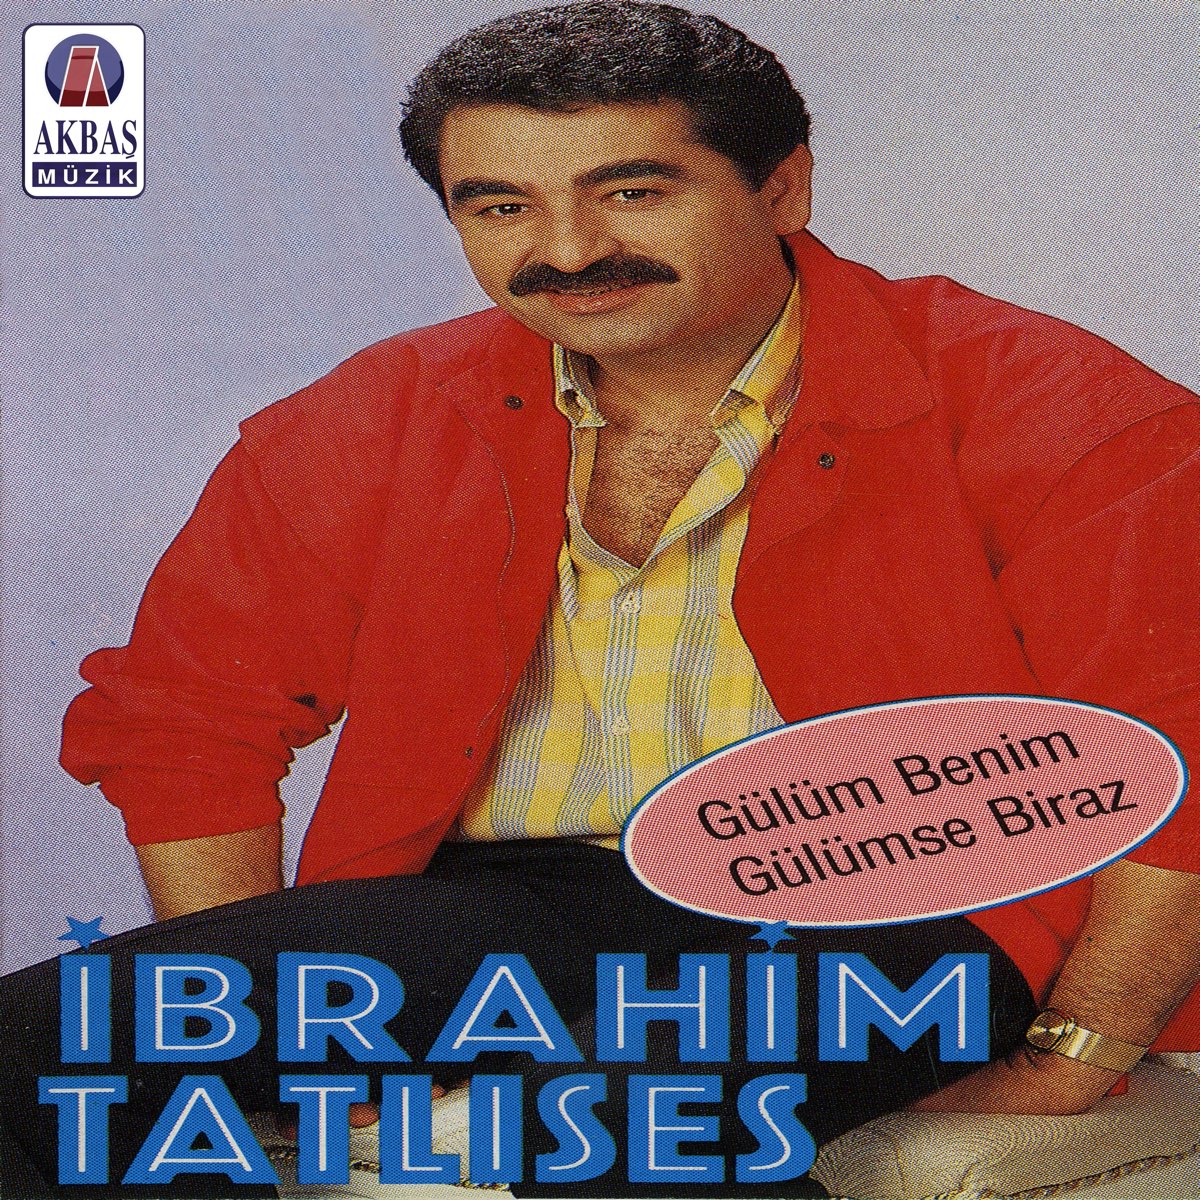 Gülüm Benim - Gülümse Biraz - Album by İbrahim Tatlıses - Apple Music